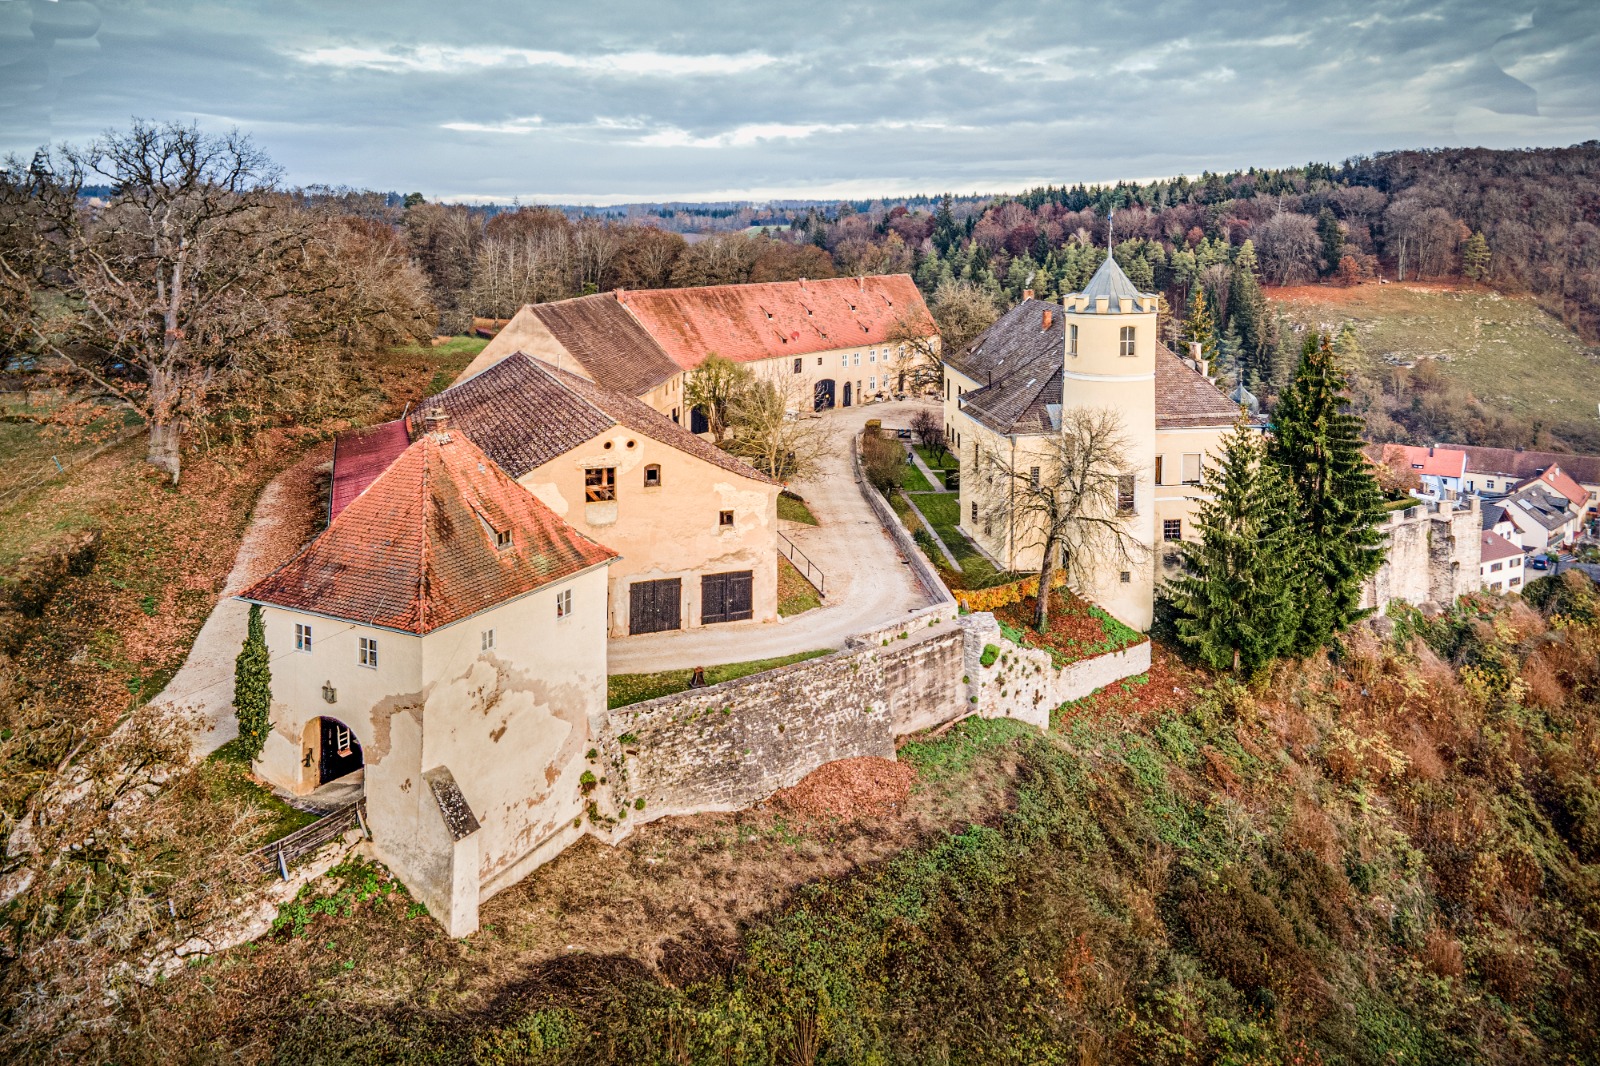 Logeren in een kasteel in Duitsland